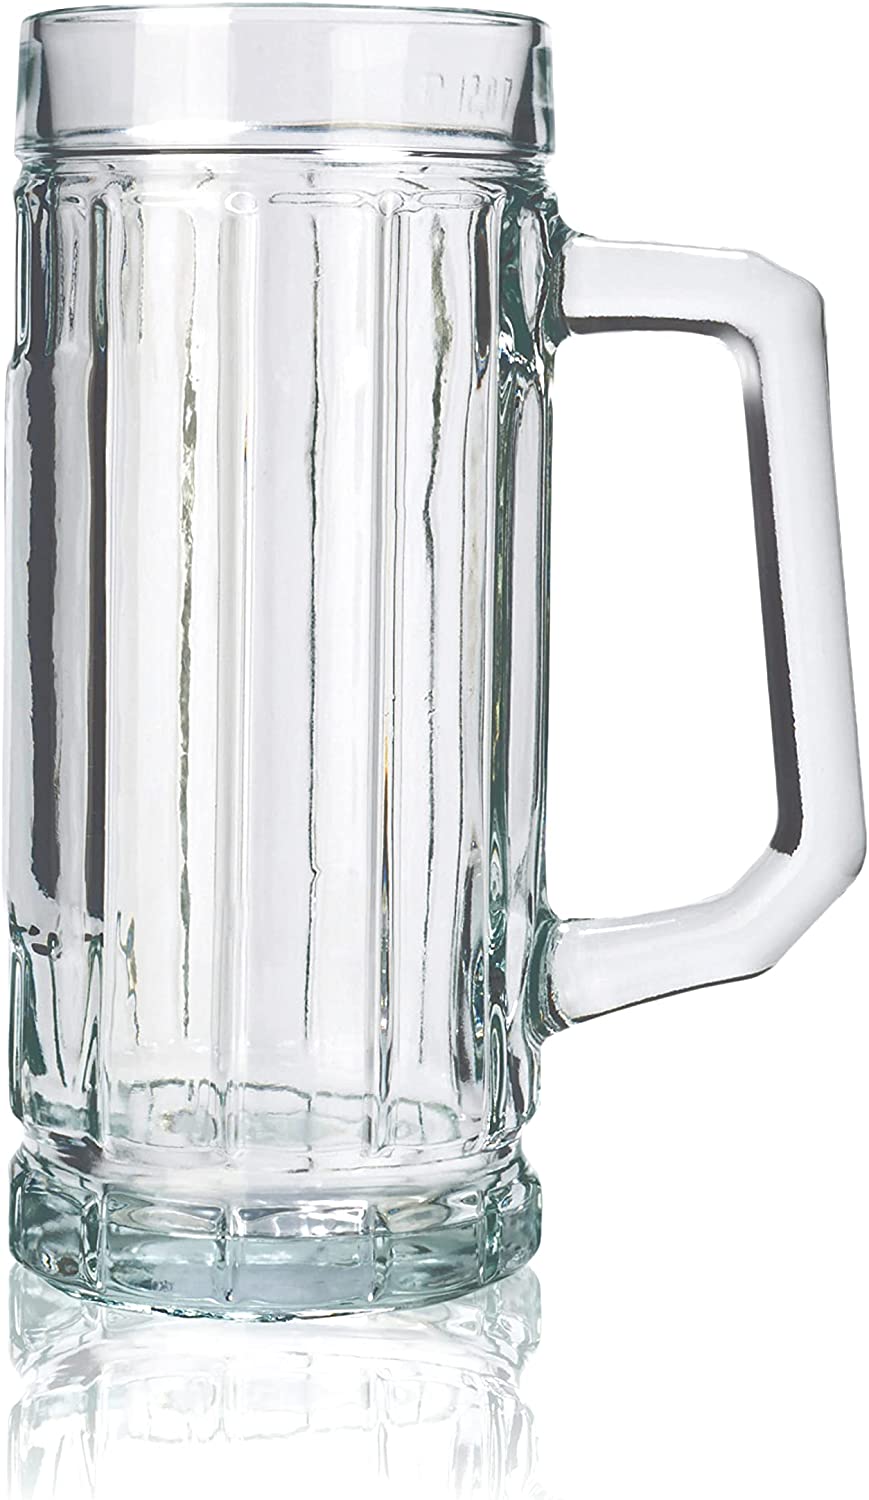 Stölzle Oberglas Gambrinus Beer Mugs / Set of 6 Beer Mugs 0.25 Litres / Sturdy Beer Jug / Beer Glasses 0.25 Litres Made of Soda Lime Glass / Beer Mugs 0.25 Litres Dishwasher Safe